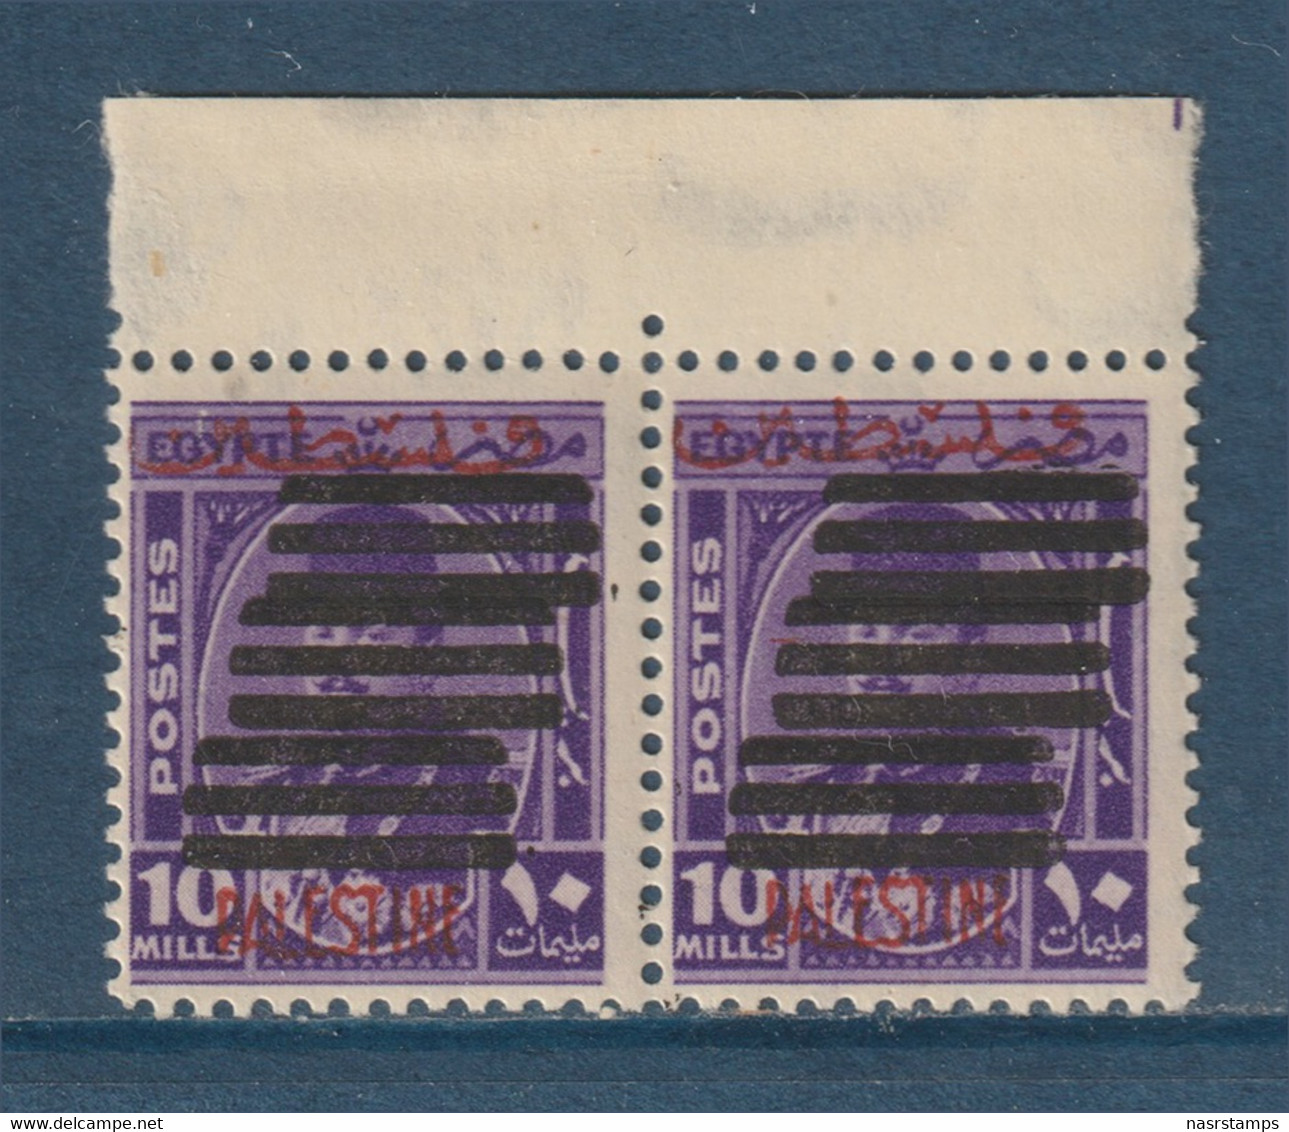 Egypt - Palestine - 1953 - Very Rare - Overprinted 9 Bars - ( 10m - K. Farouk ) - MNH - Ongebruikt